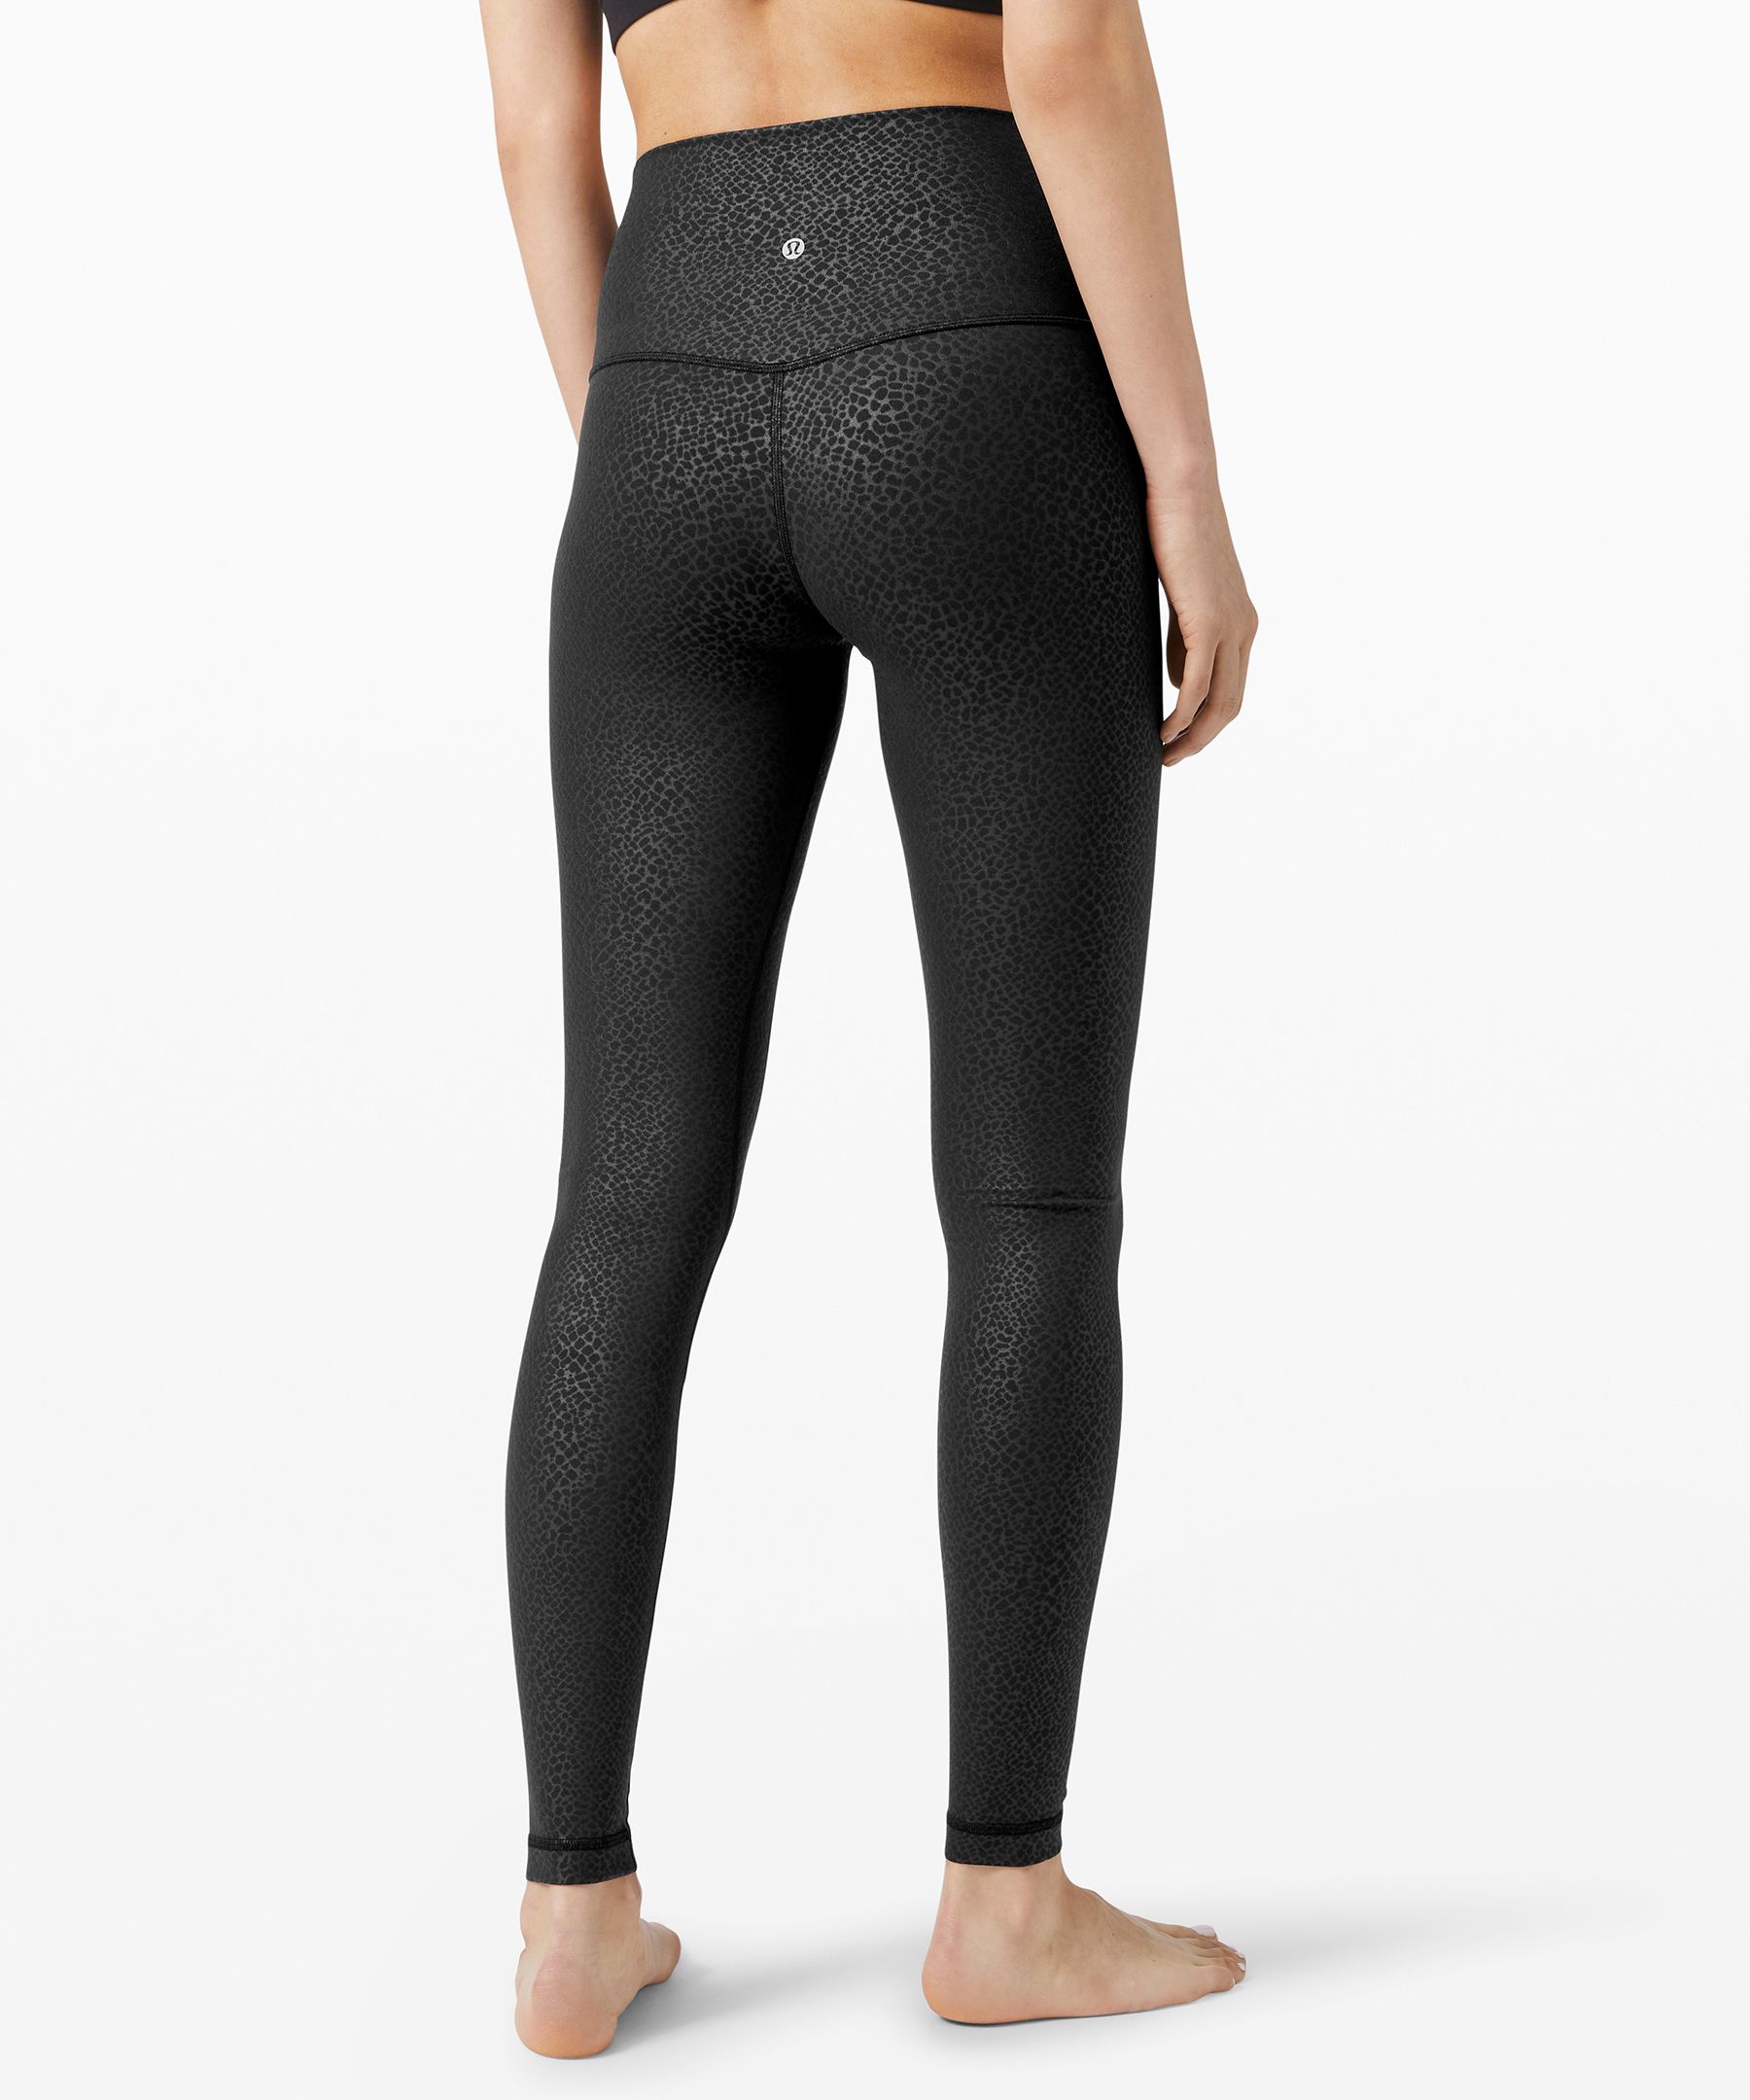 Lululemon Align Full Length Yoga Pants - High-Waisted Design, 28 Inch  Inseam (Black, 14)